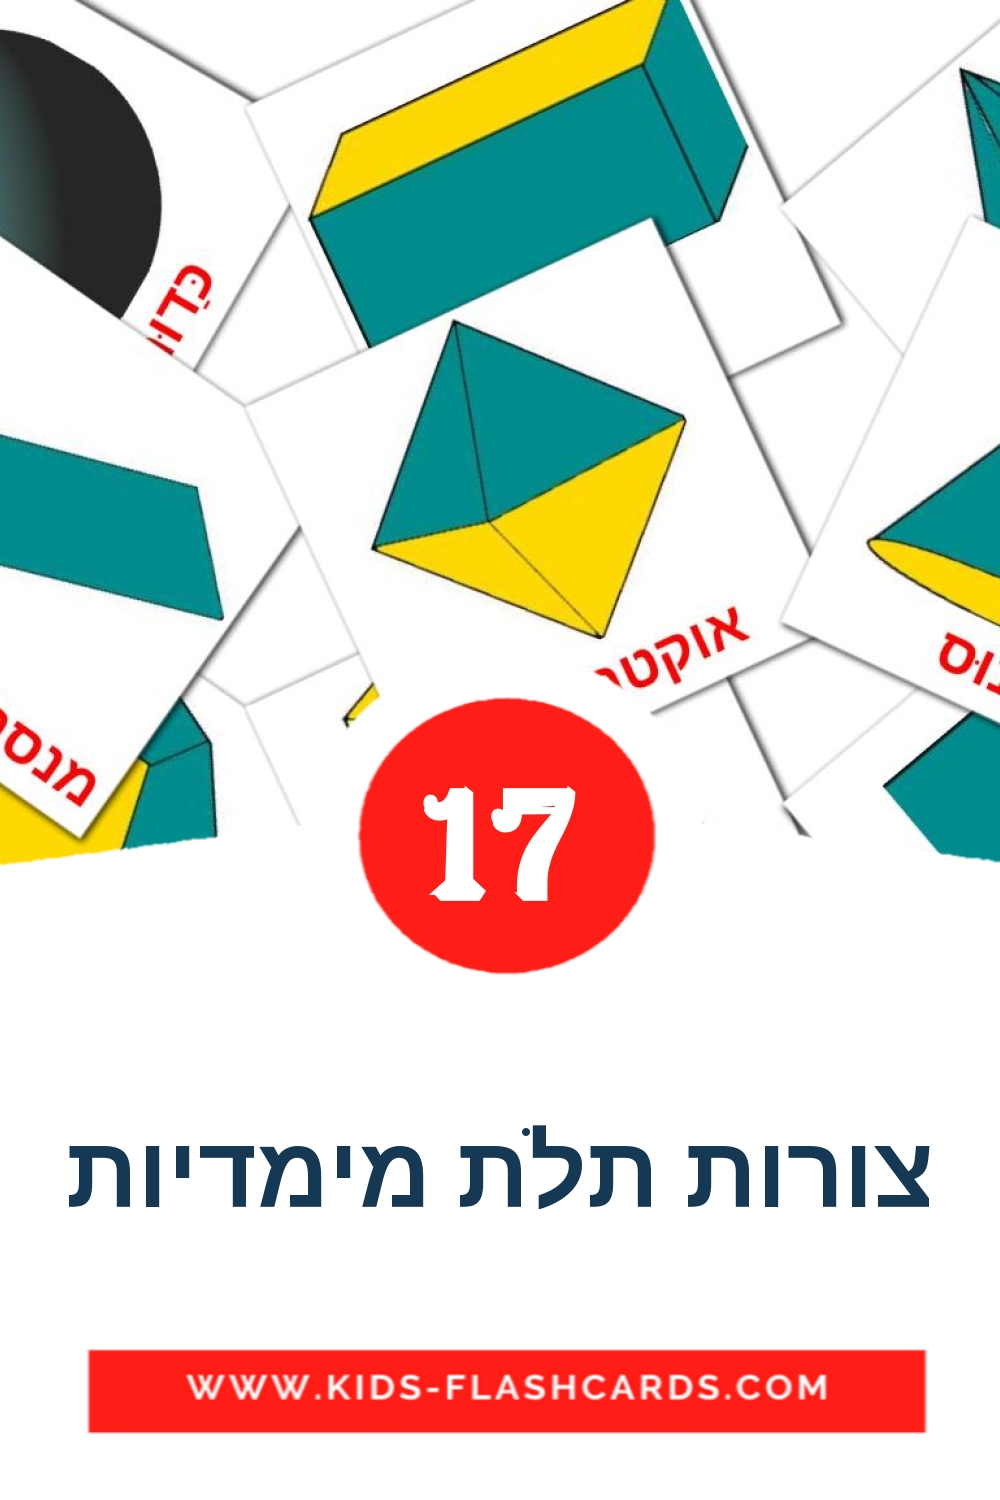 17 צורות תלת מימדיות Bildkarten für den Kindergarten auf Hebräisch